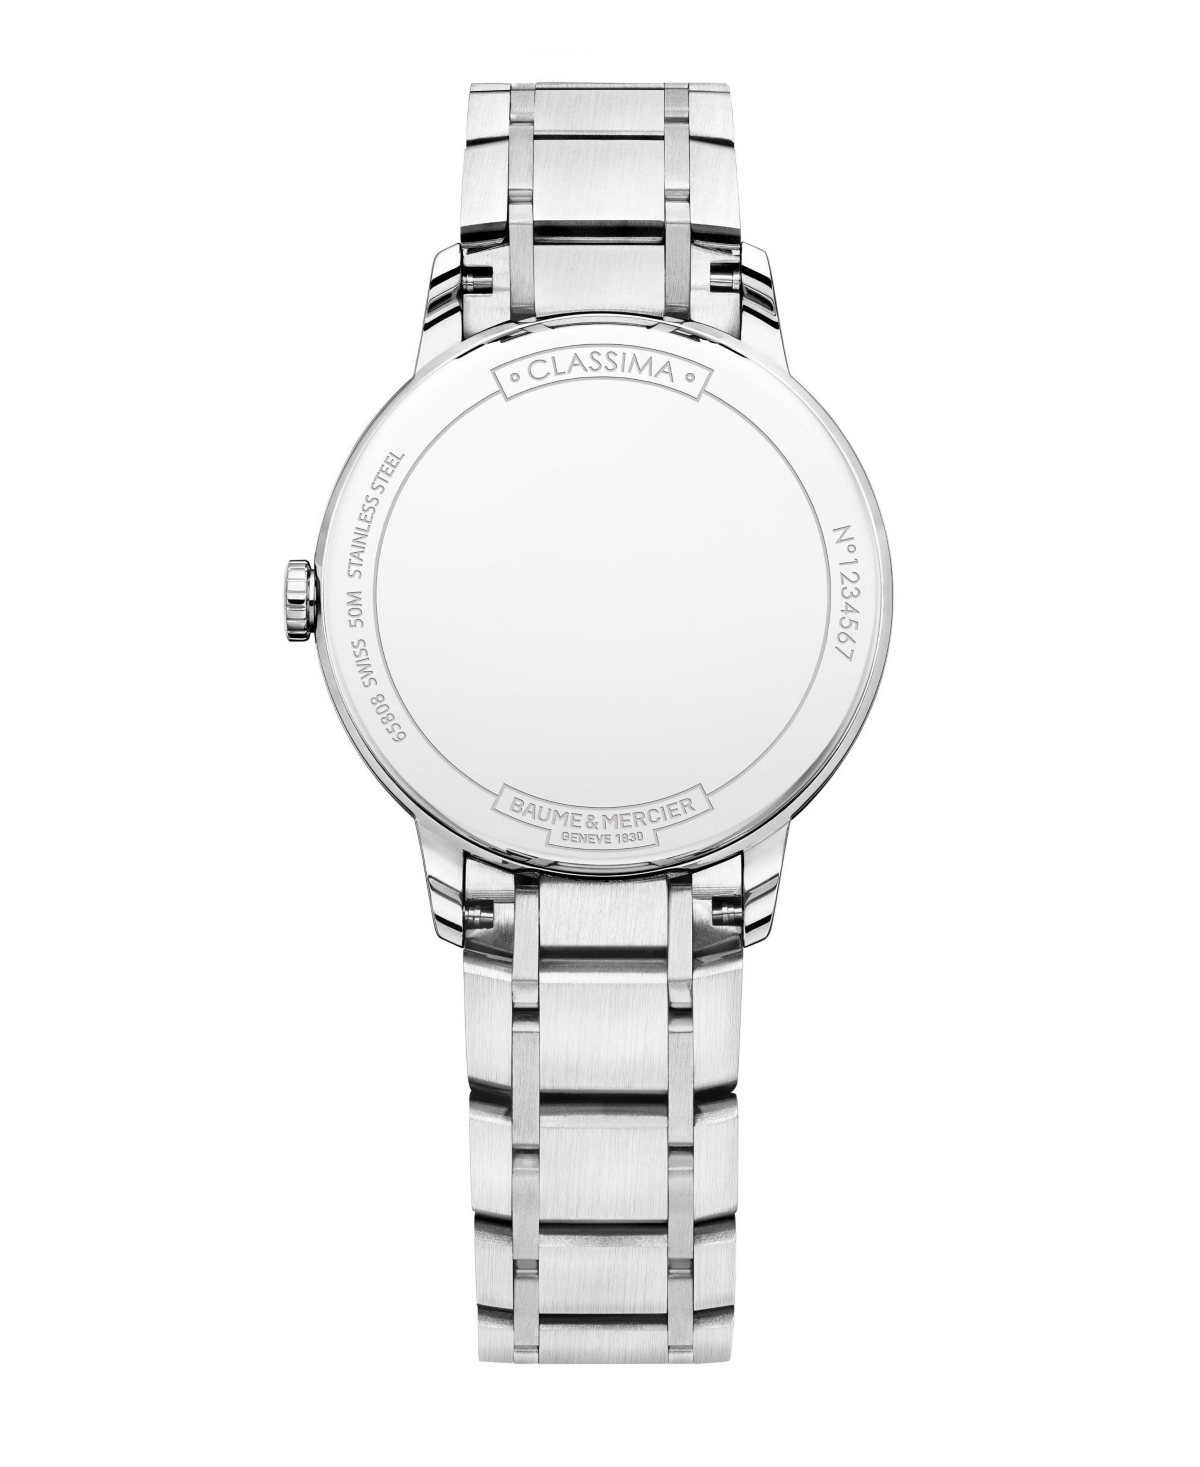 Shop Baume & Mercier Women's Swiss Classima Diamond-accent Stainless Steel Bracelet Watch 31mm M0a10326 In Silver